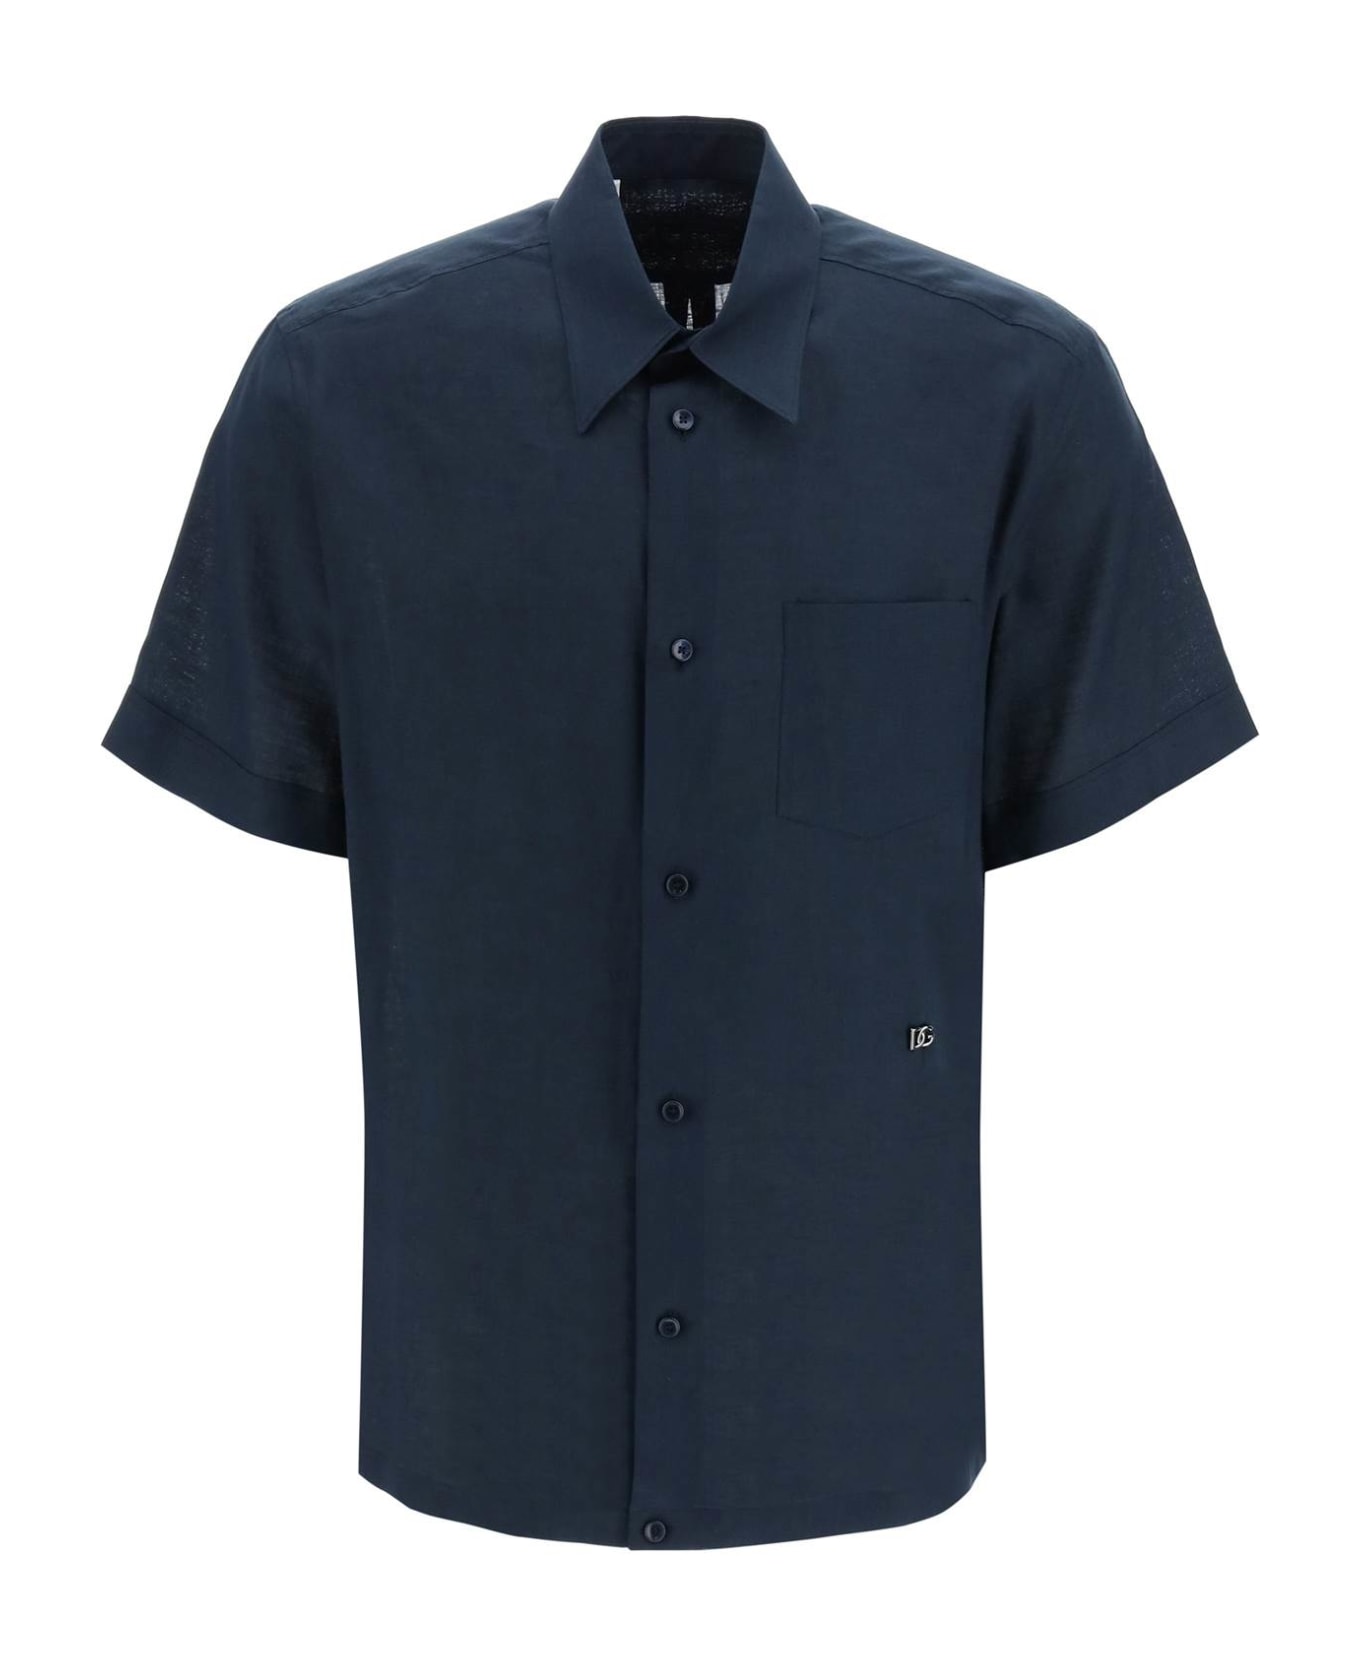 Dolce & Gabbana Logo Plaque Plain Formal Shirt - PETROLIO SCURISSIMO (Blue) シャツ